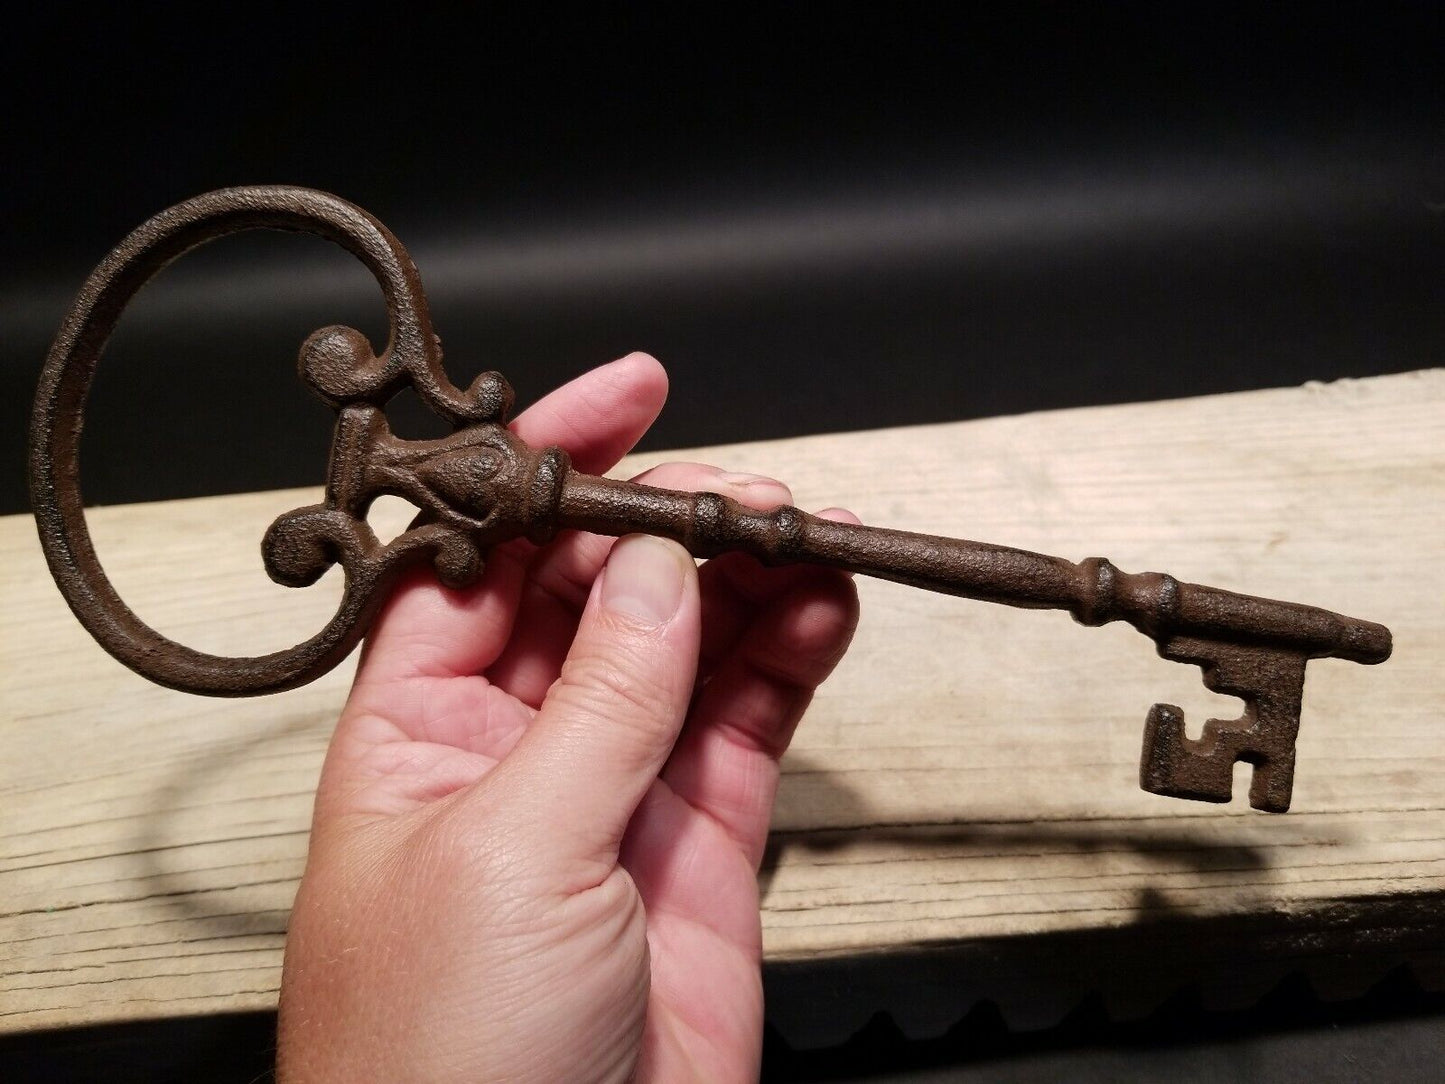 Antique Vintage Style Cast Iron Large Skeleton Key